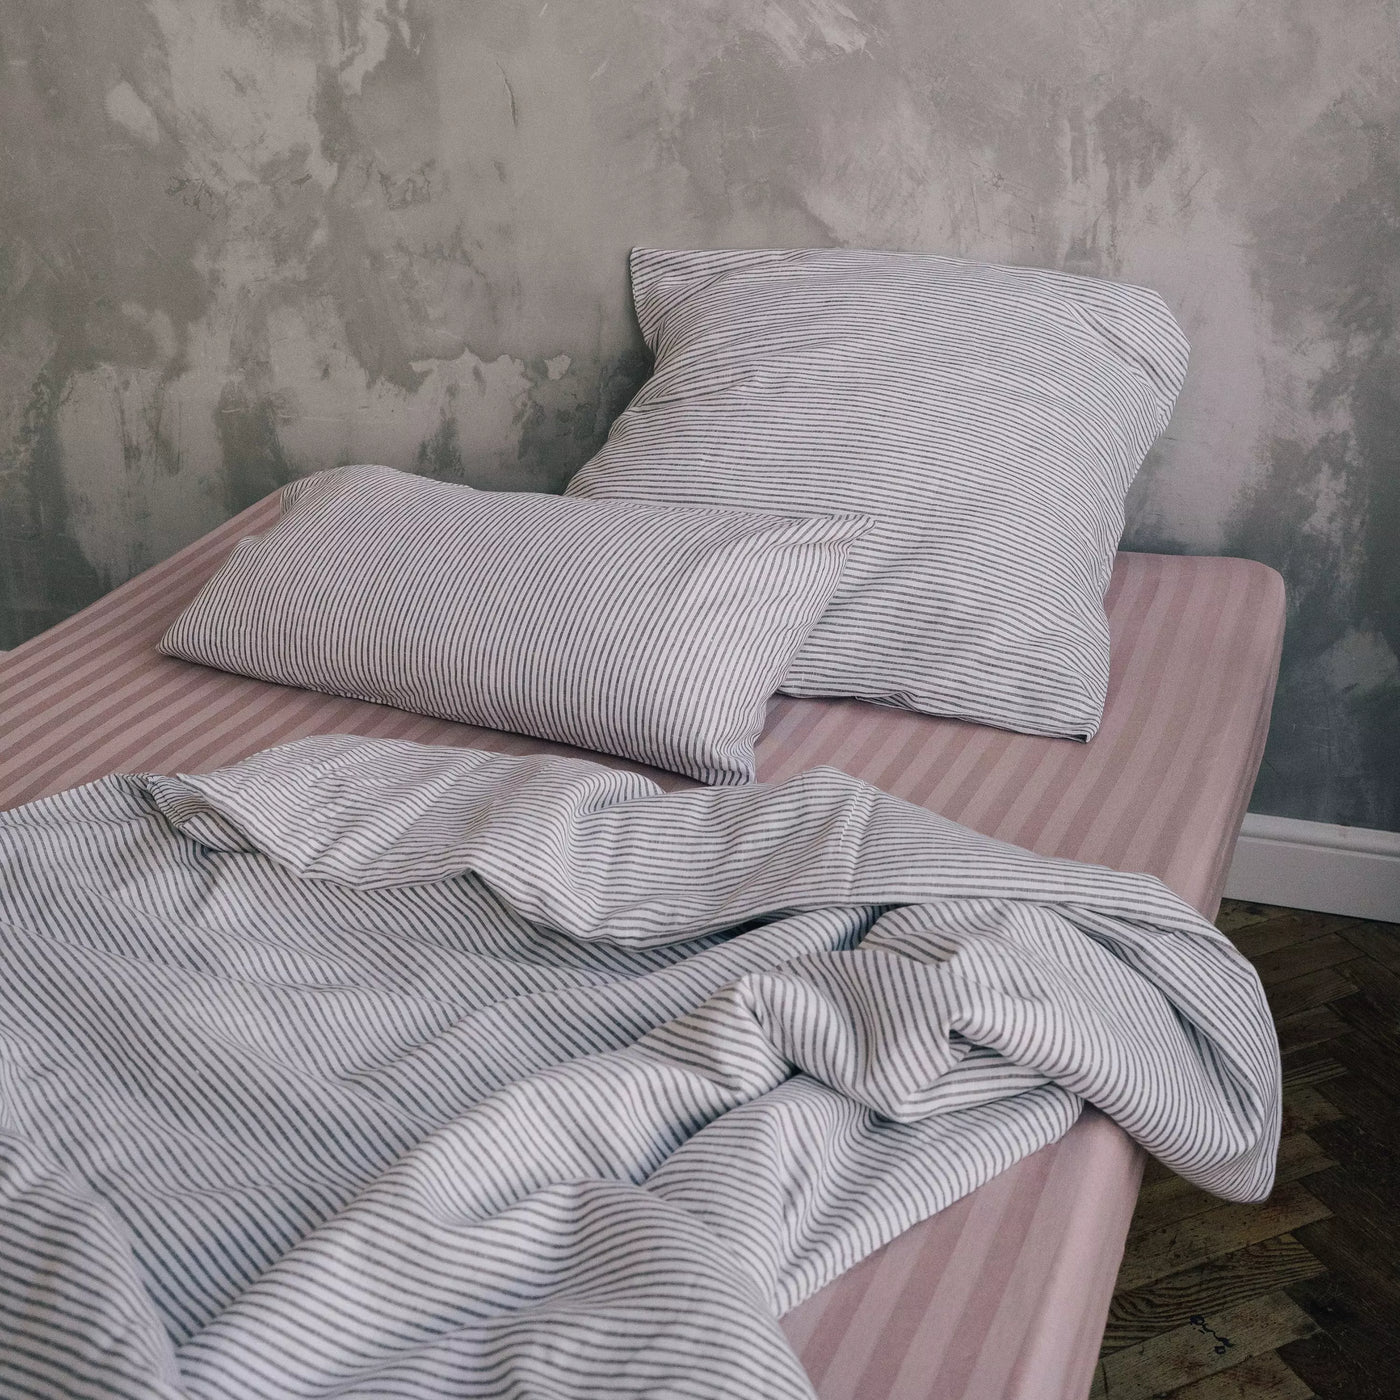 Acquista il set di biancheria da letto in lino naturale 135x200 bianco con strisce nere 2